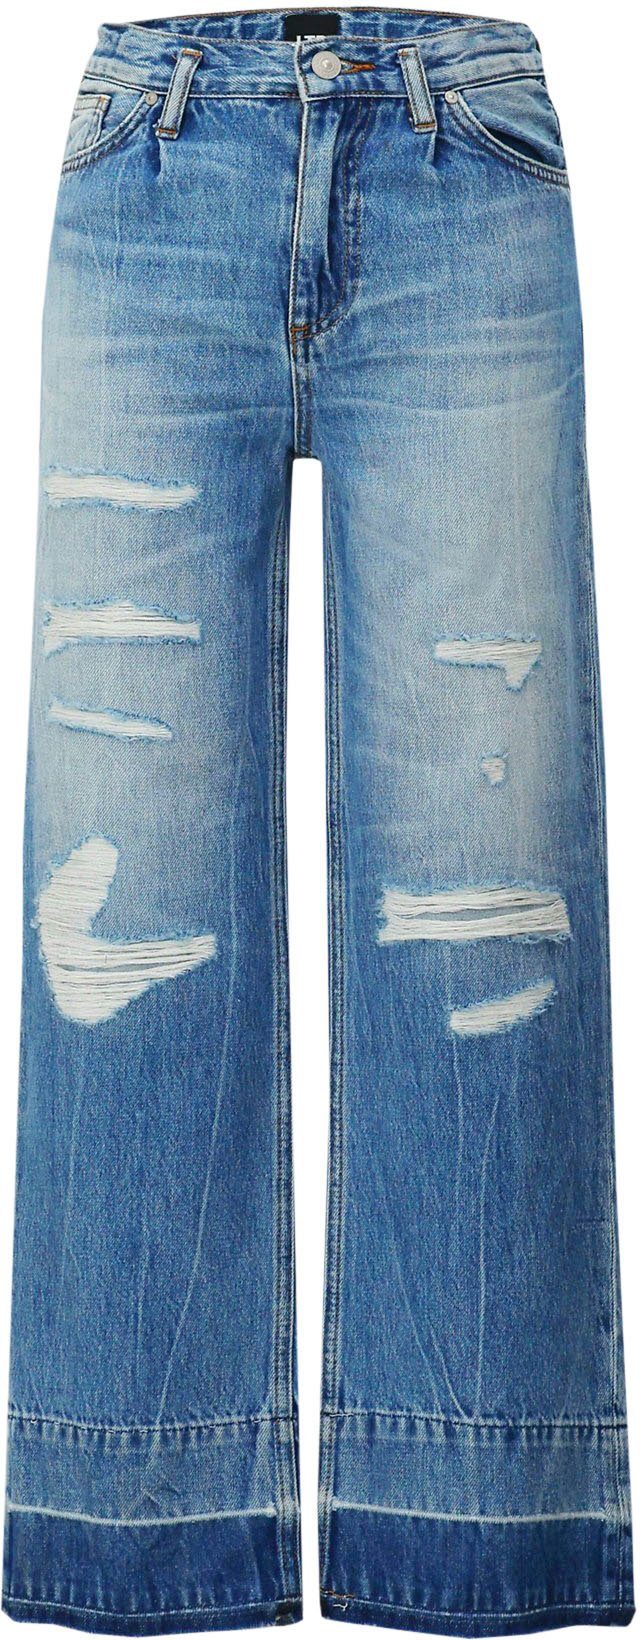 LTB Weite Jeans Destroyed-Effekten, mit GIRLS for FELICIA